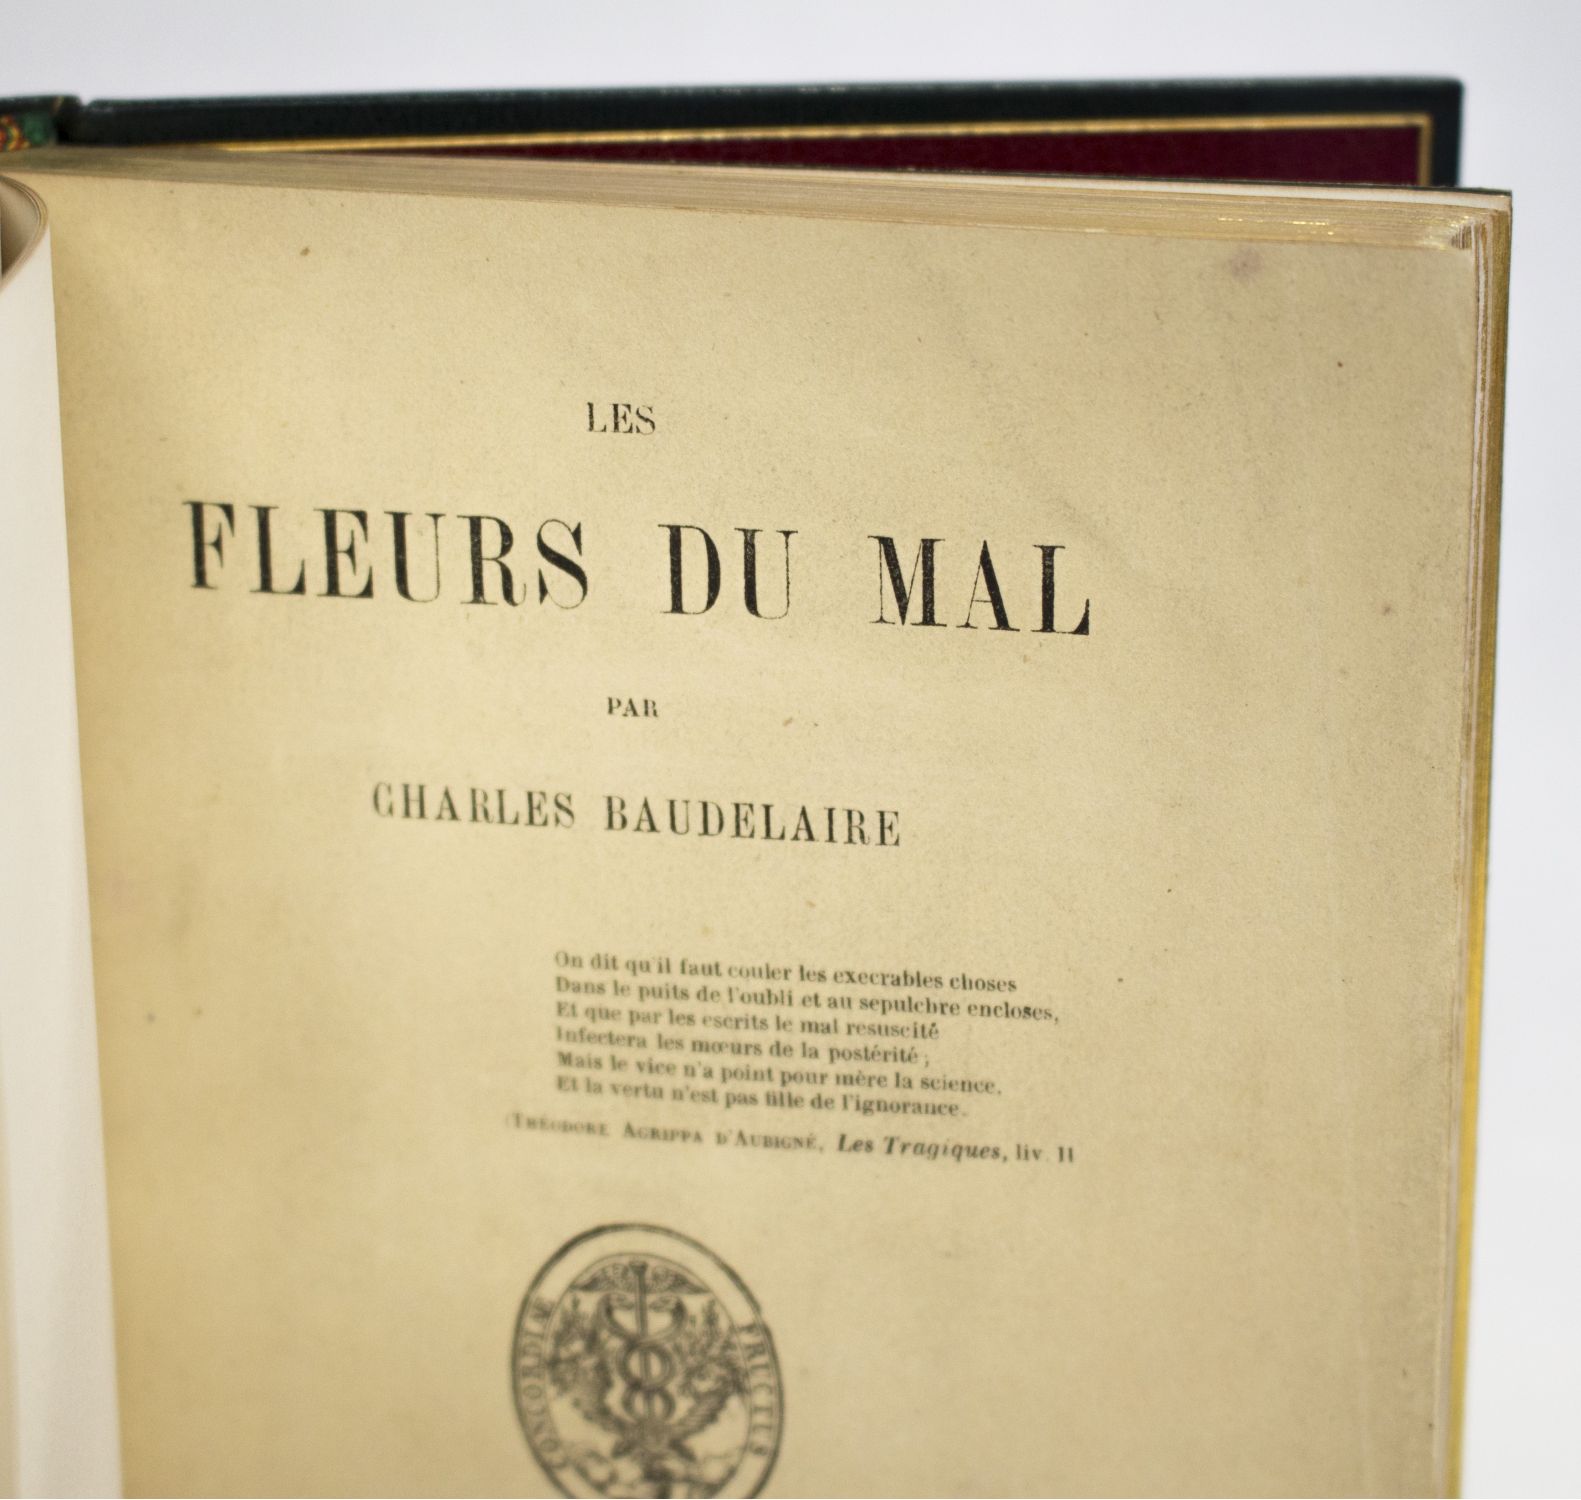 Les Fleurs du mal by Charles Baudelaire - jeshh